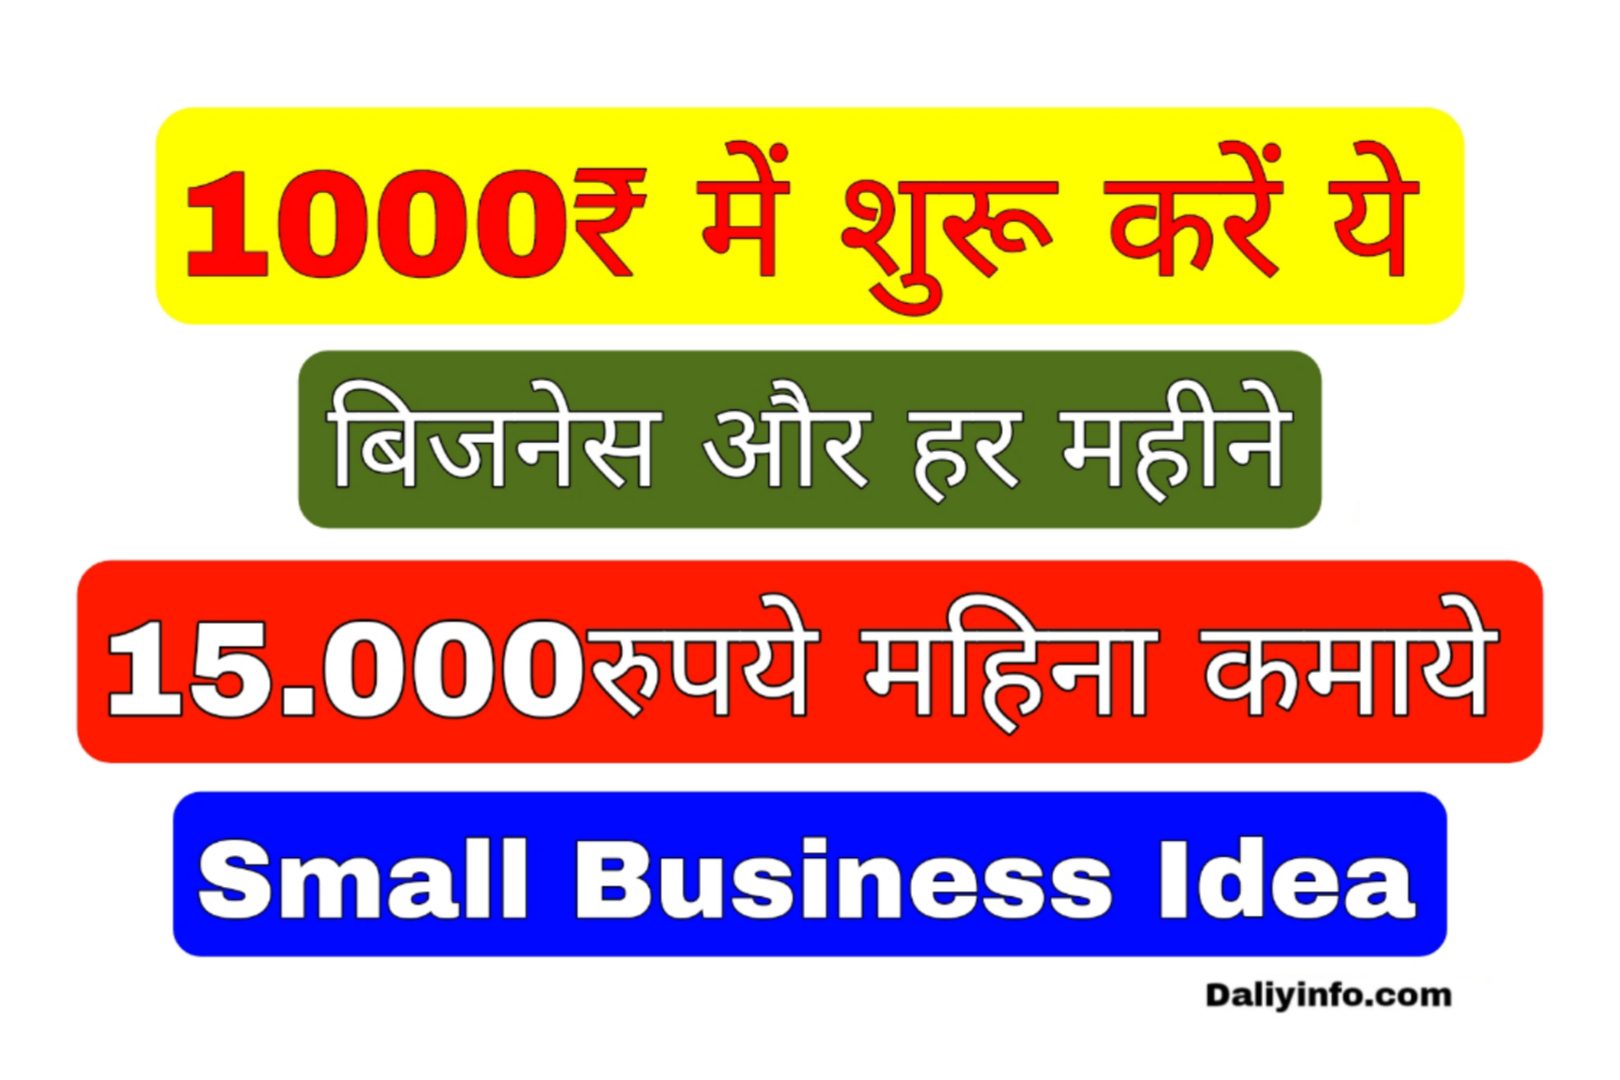 1000 में शुरू करें ये बिजनेस और हर महीने 15,000रुपये महिना कमाये -Small Business Idea